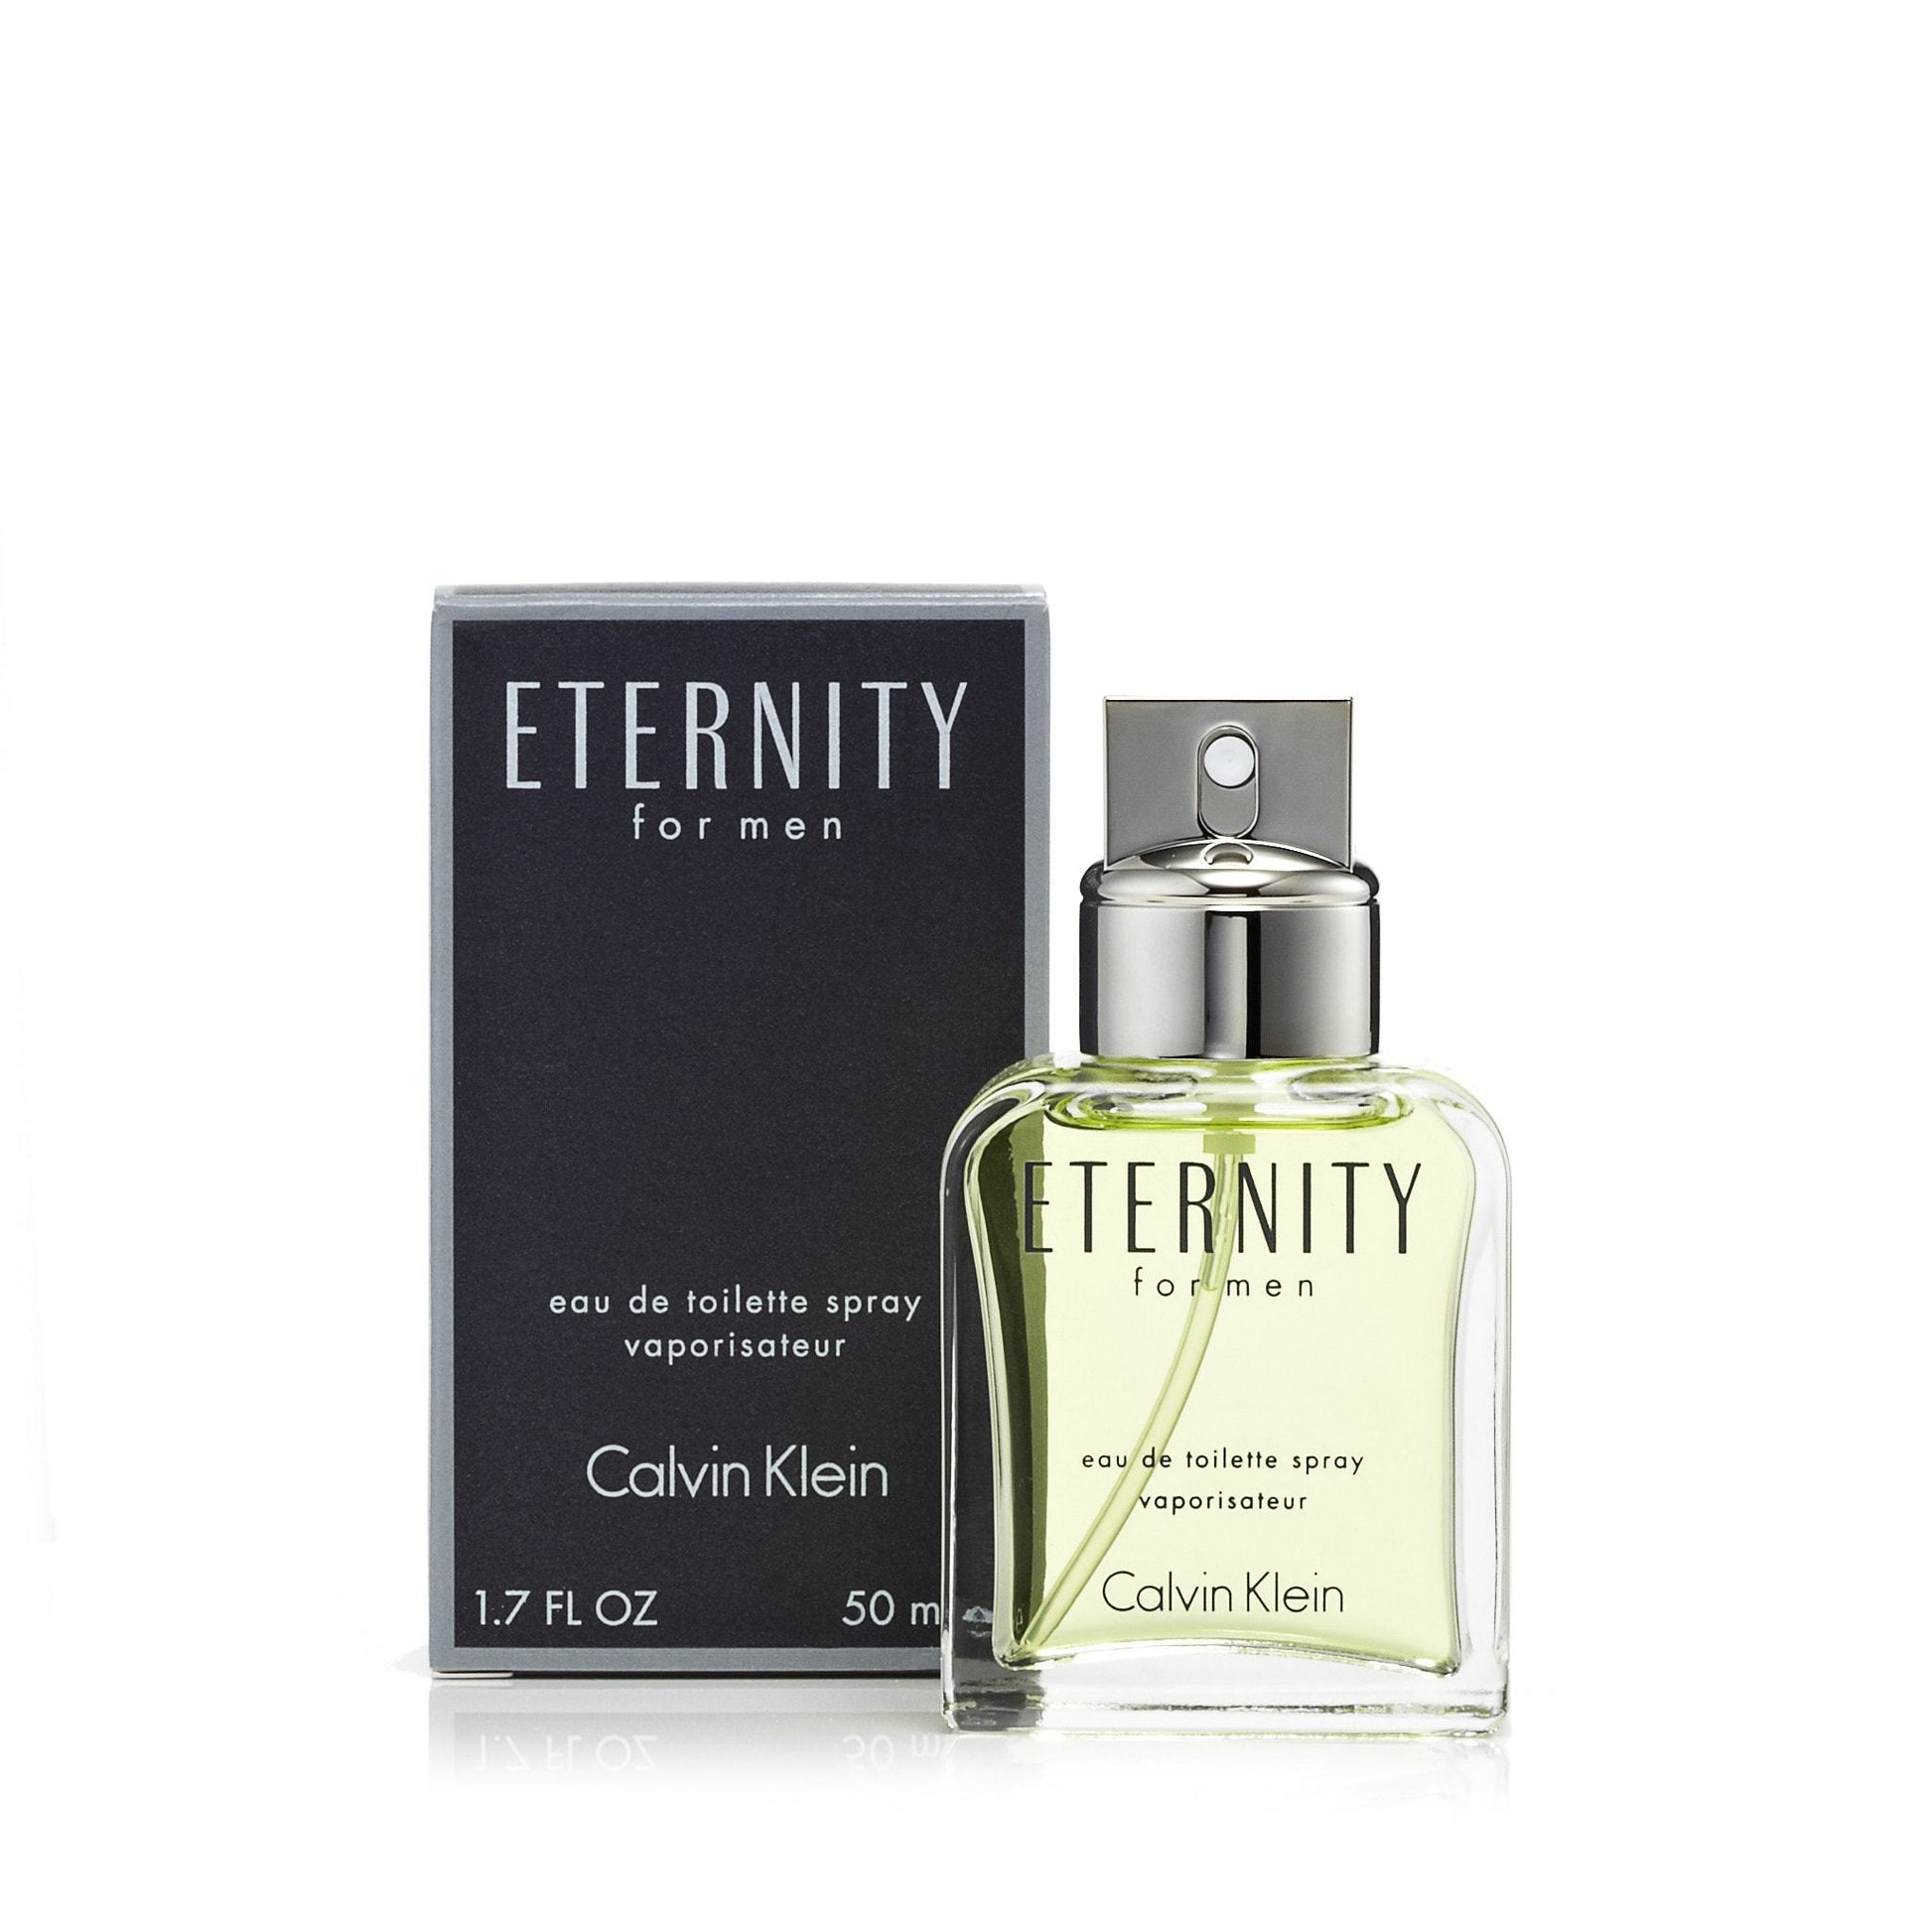 Eternity Eau de Toilette Spray for Men by Calvin Klein, Product image 7